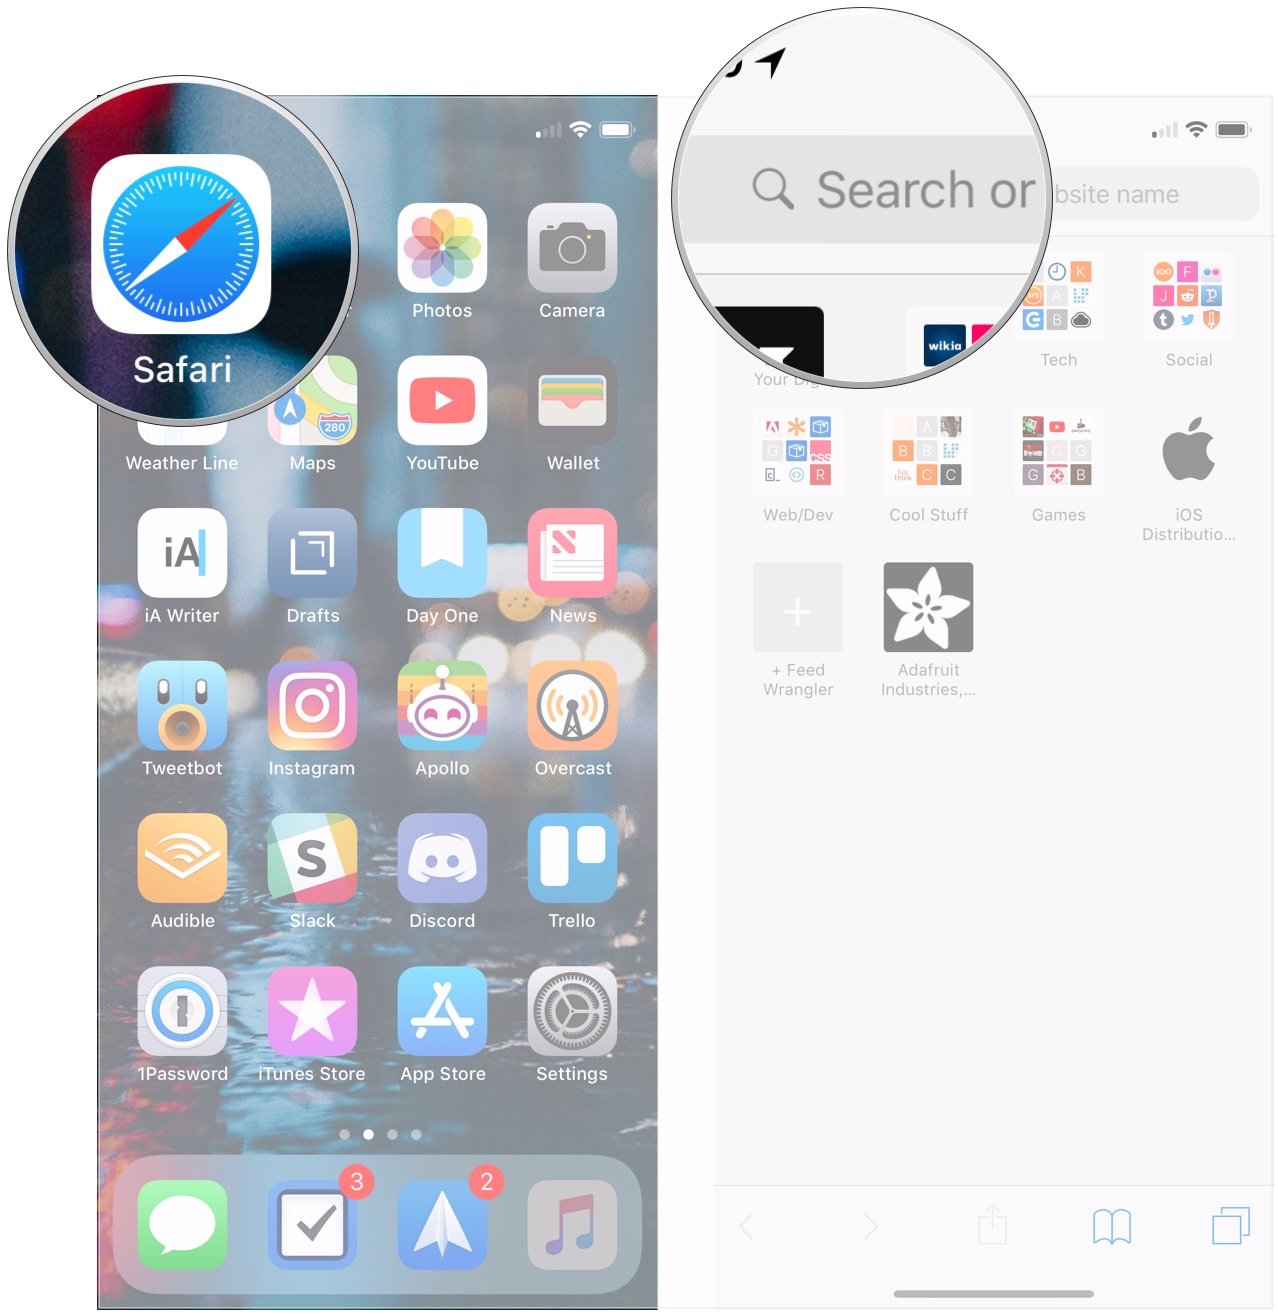 Uso de SmartSearch en Safari en iPhone: Abra Safari y toque el botón Búsqueda inteligente